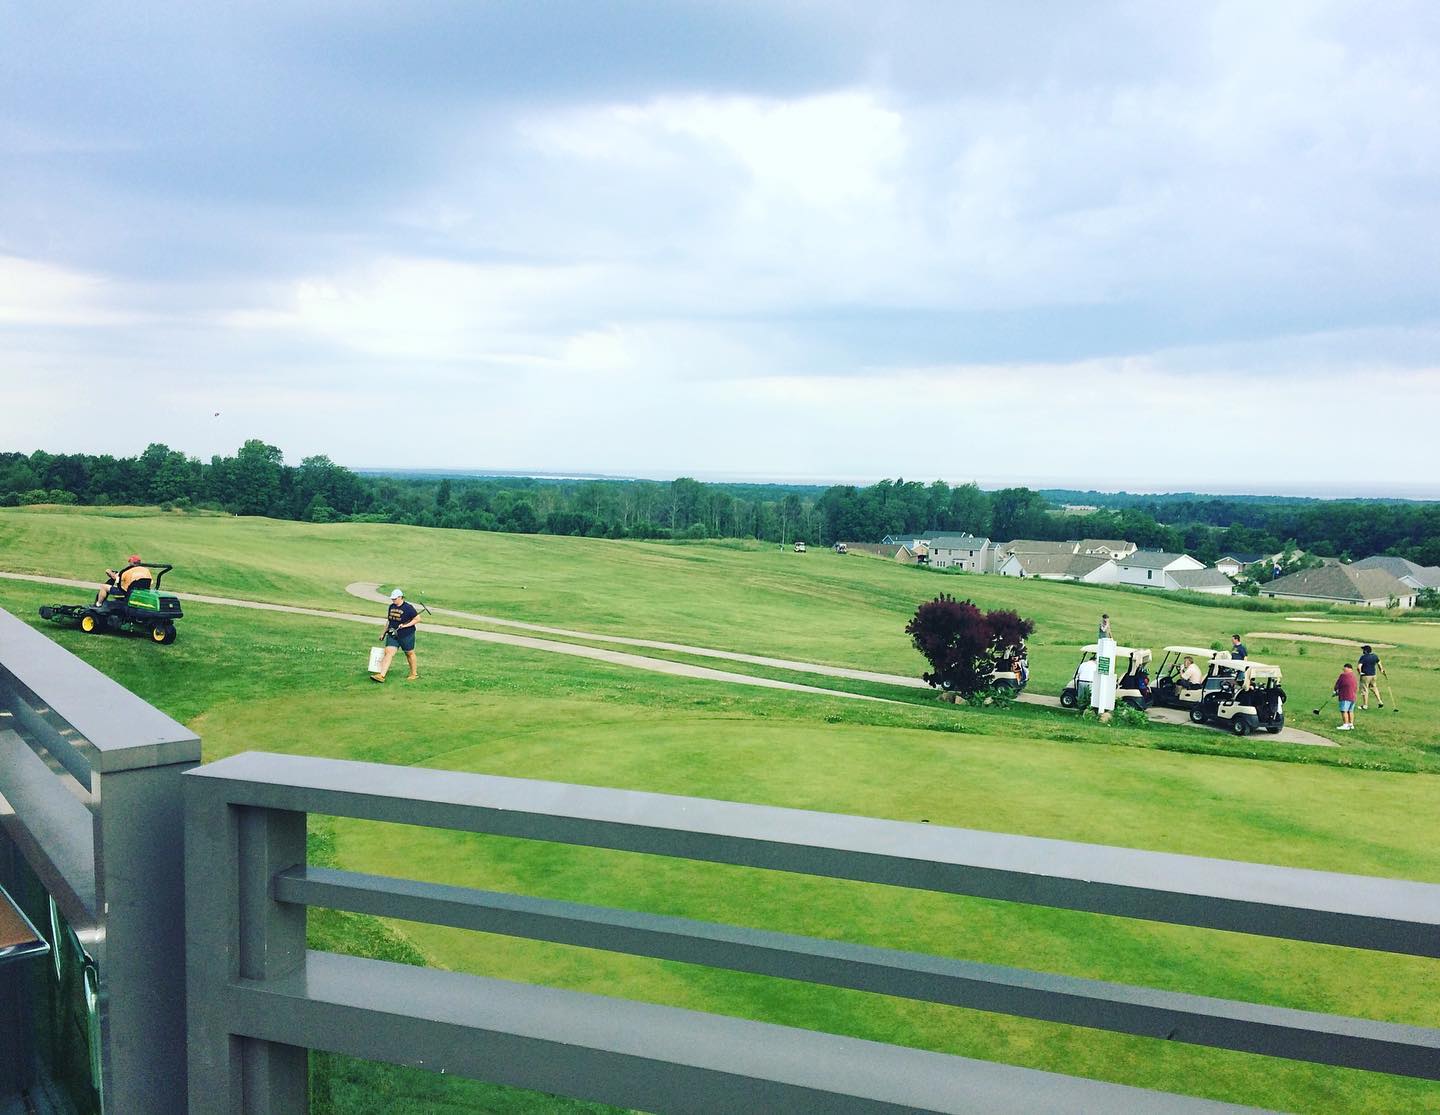 Harbor Ridge Golf Course